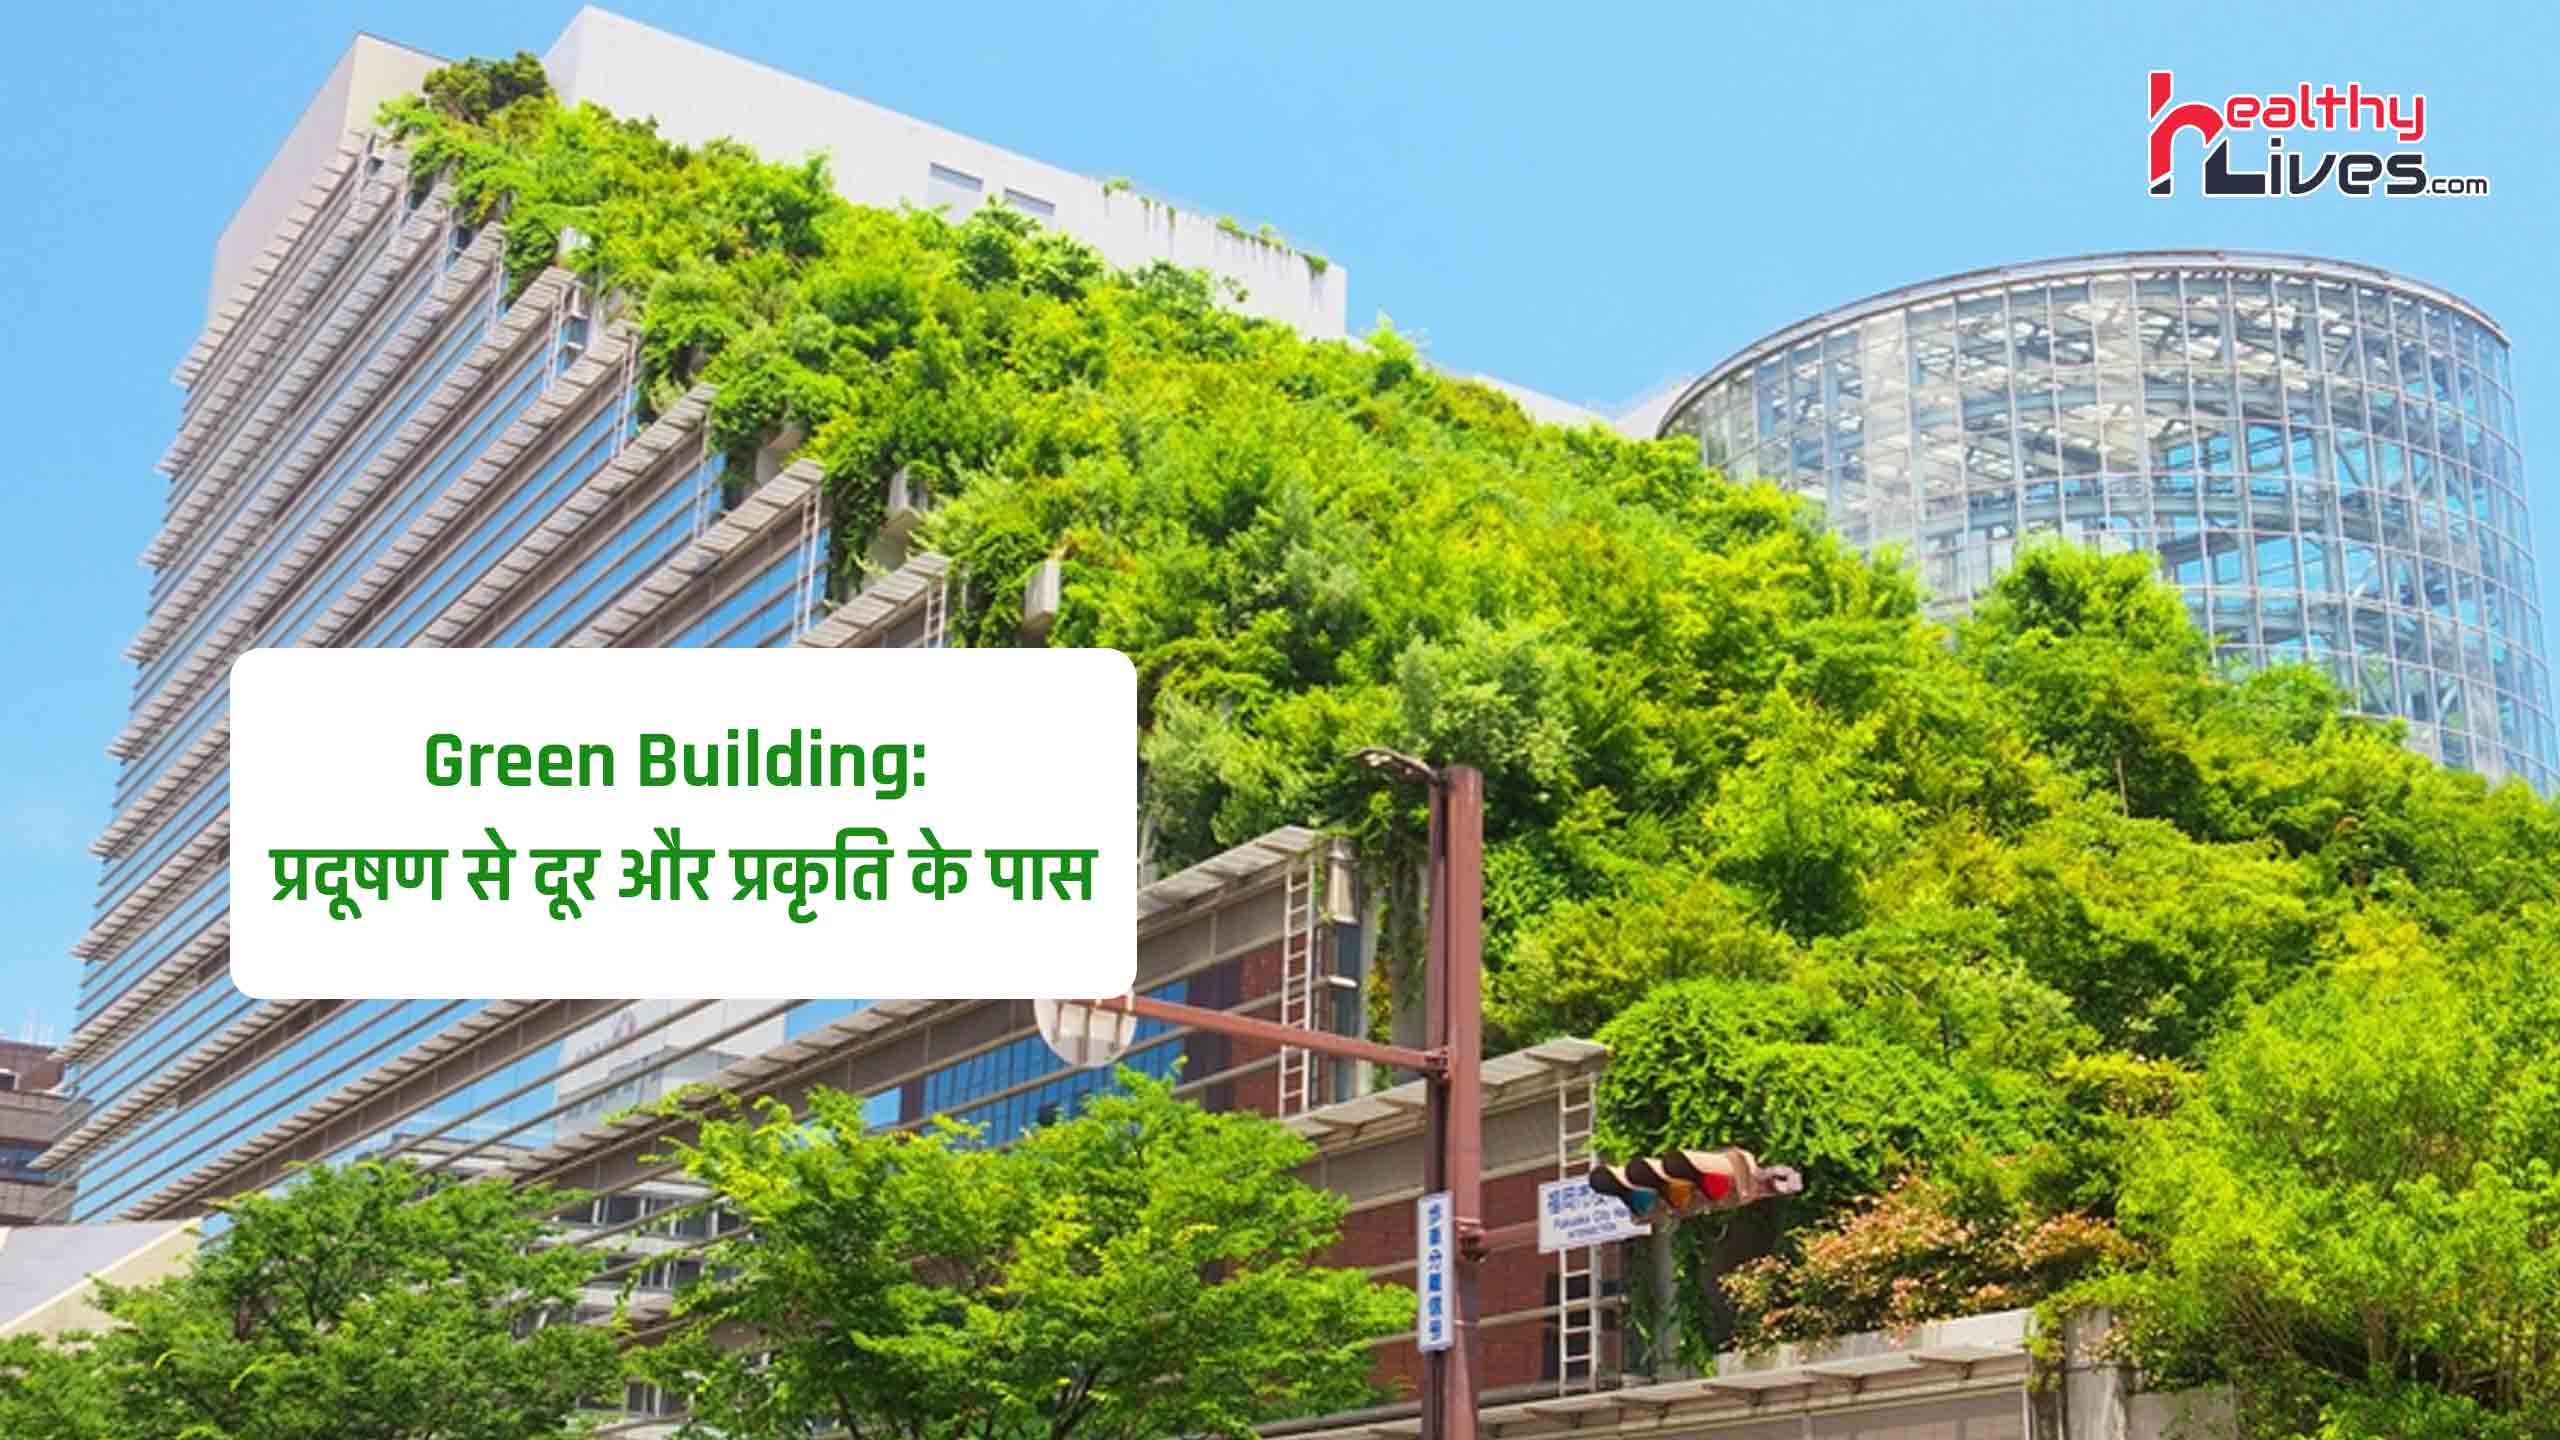 Green Building: ग्रीन बिडिंग के ग्रीन होम पर्यावरण के साथ आपको भी रखेंगे स्वस्थ